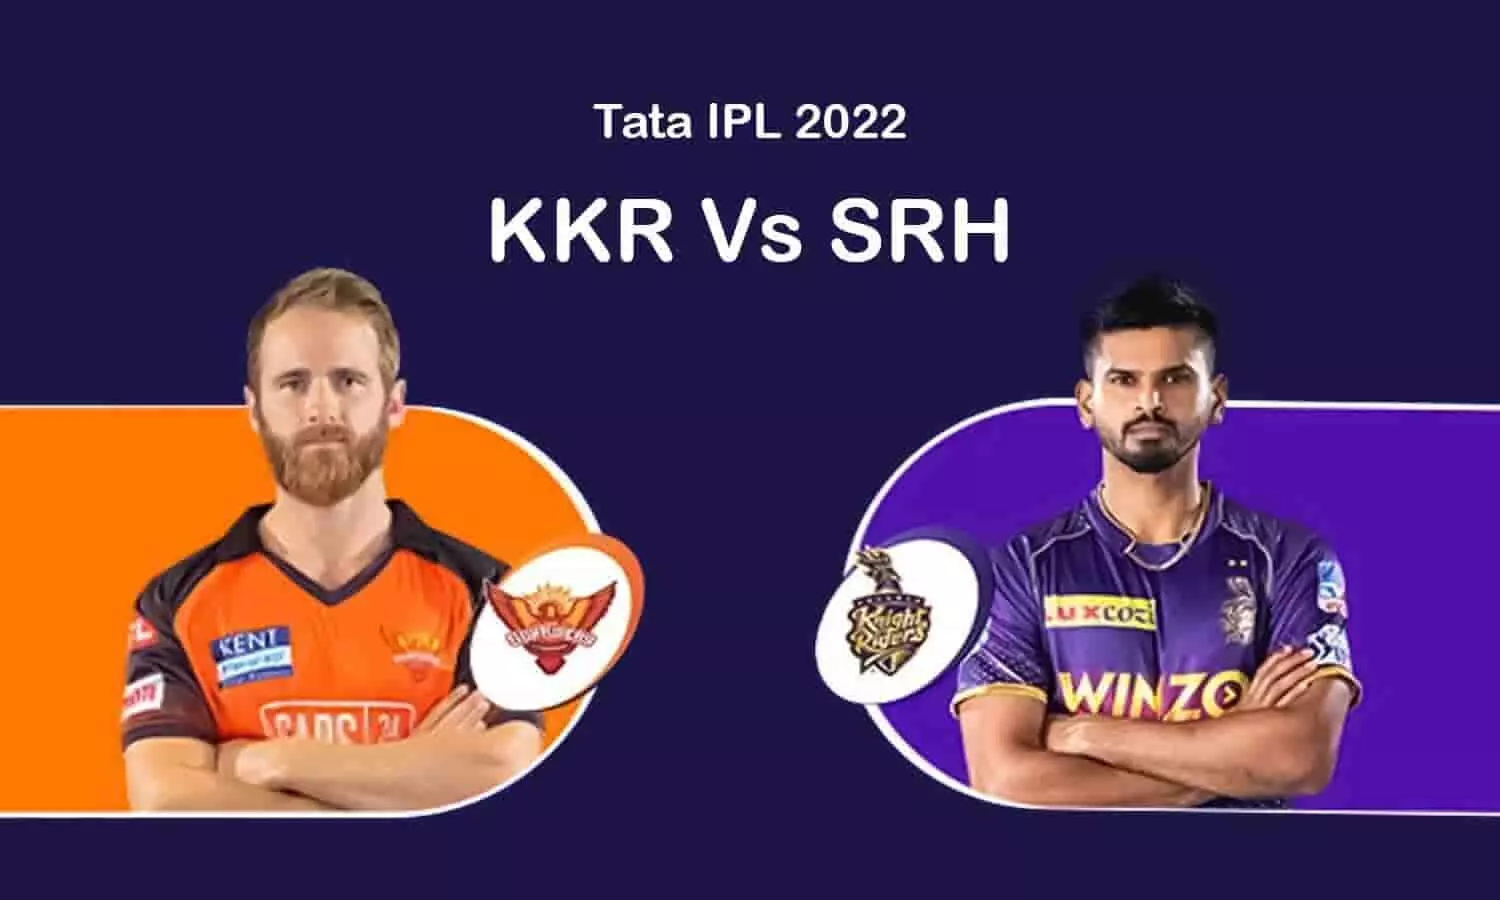 KKR Vs SRH IPL 2022